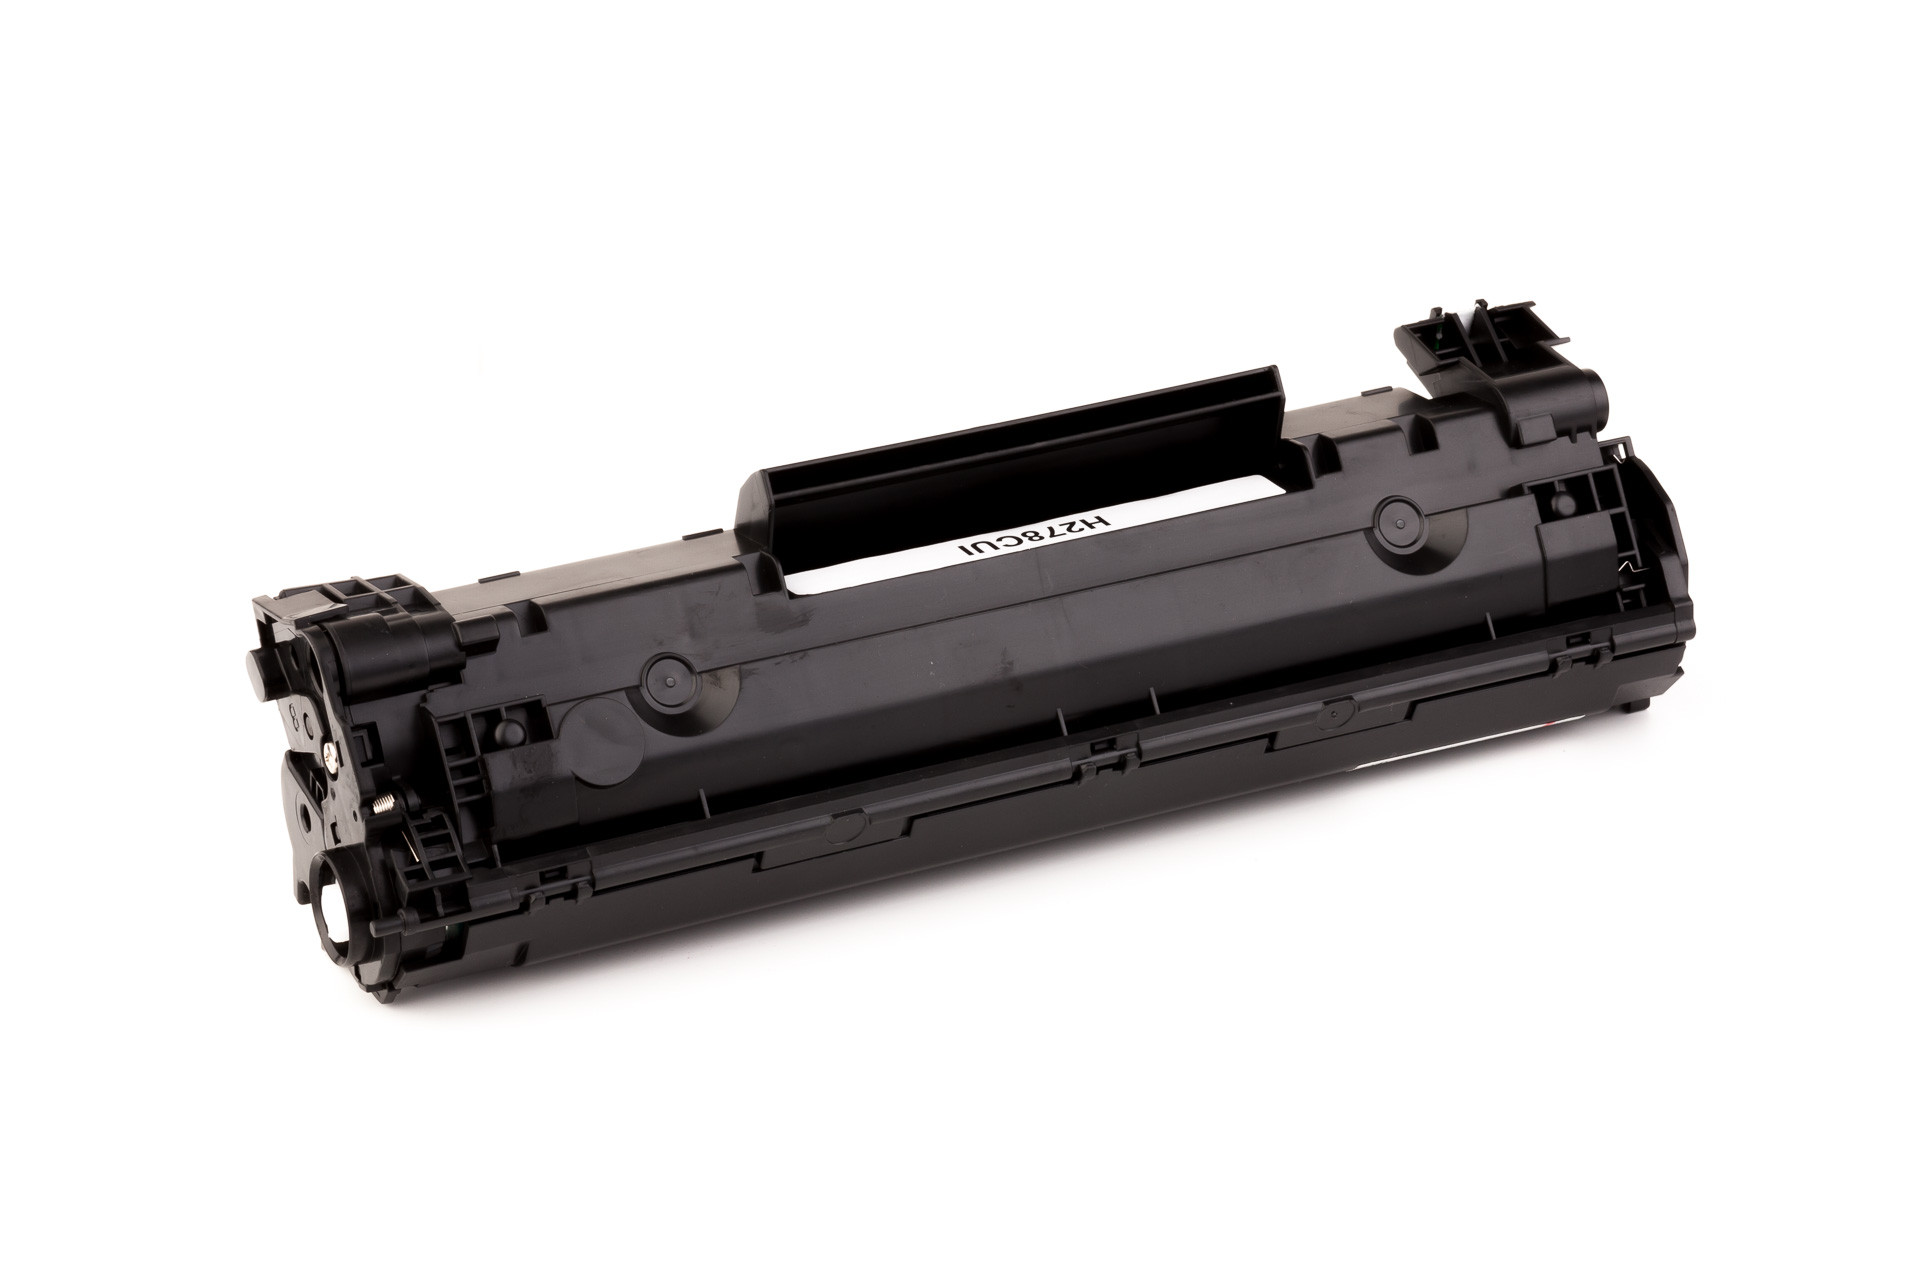 Cartucho de toner (alternativo) compatible a Canon CRG 728 / CRG728 // I-Sensys MF 4410 / 4430 / 4450 / 4550 D/ 4570 DN / 4580 DN